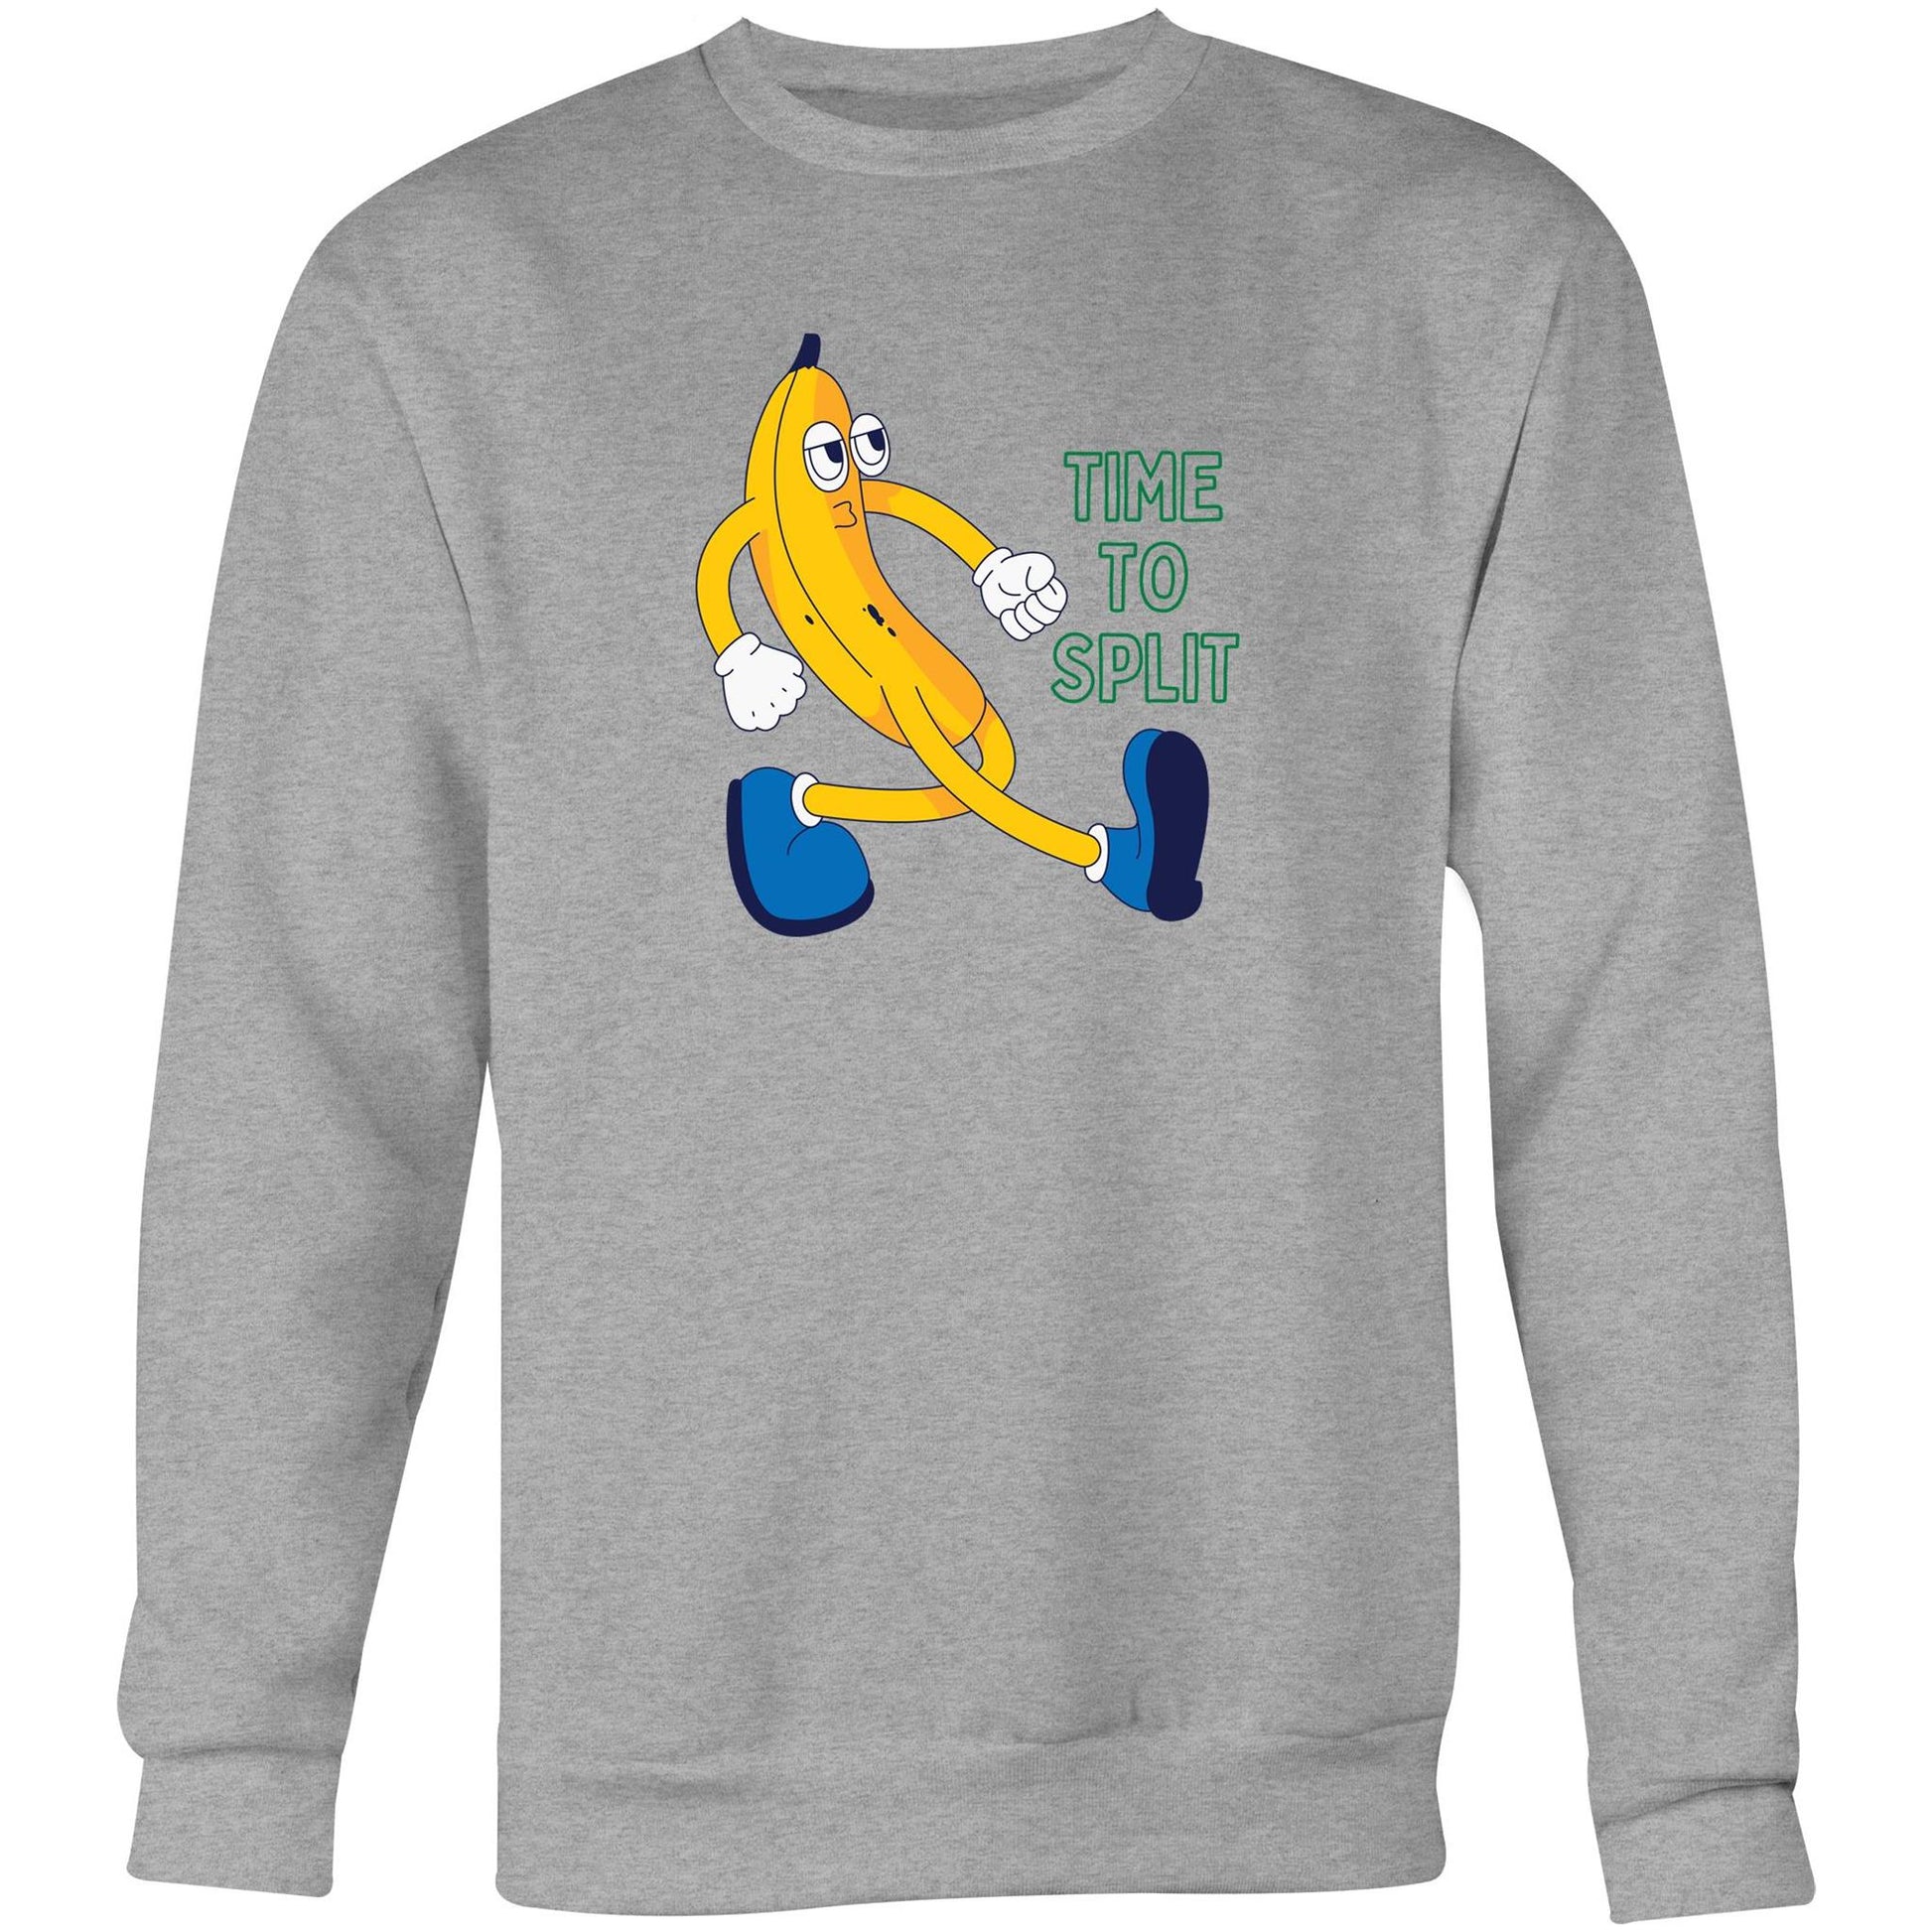 Banana, Time To Split - Crew Sweatshirt Grey Marle Sweatshirt Funny